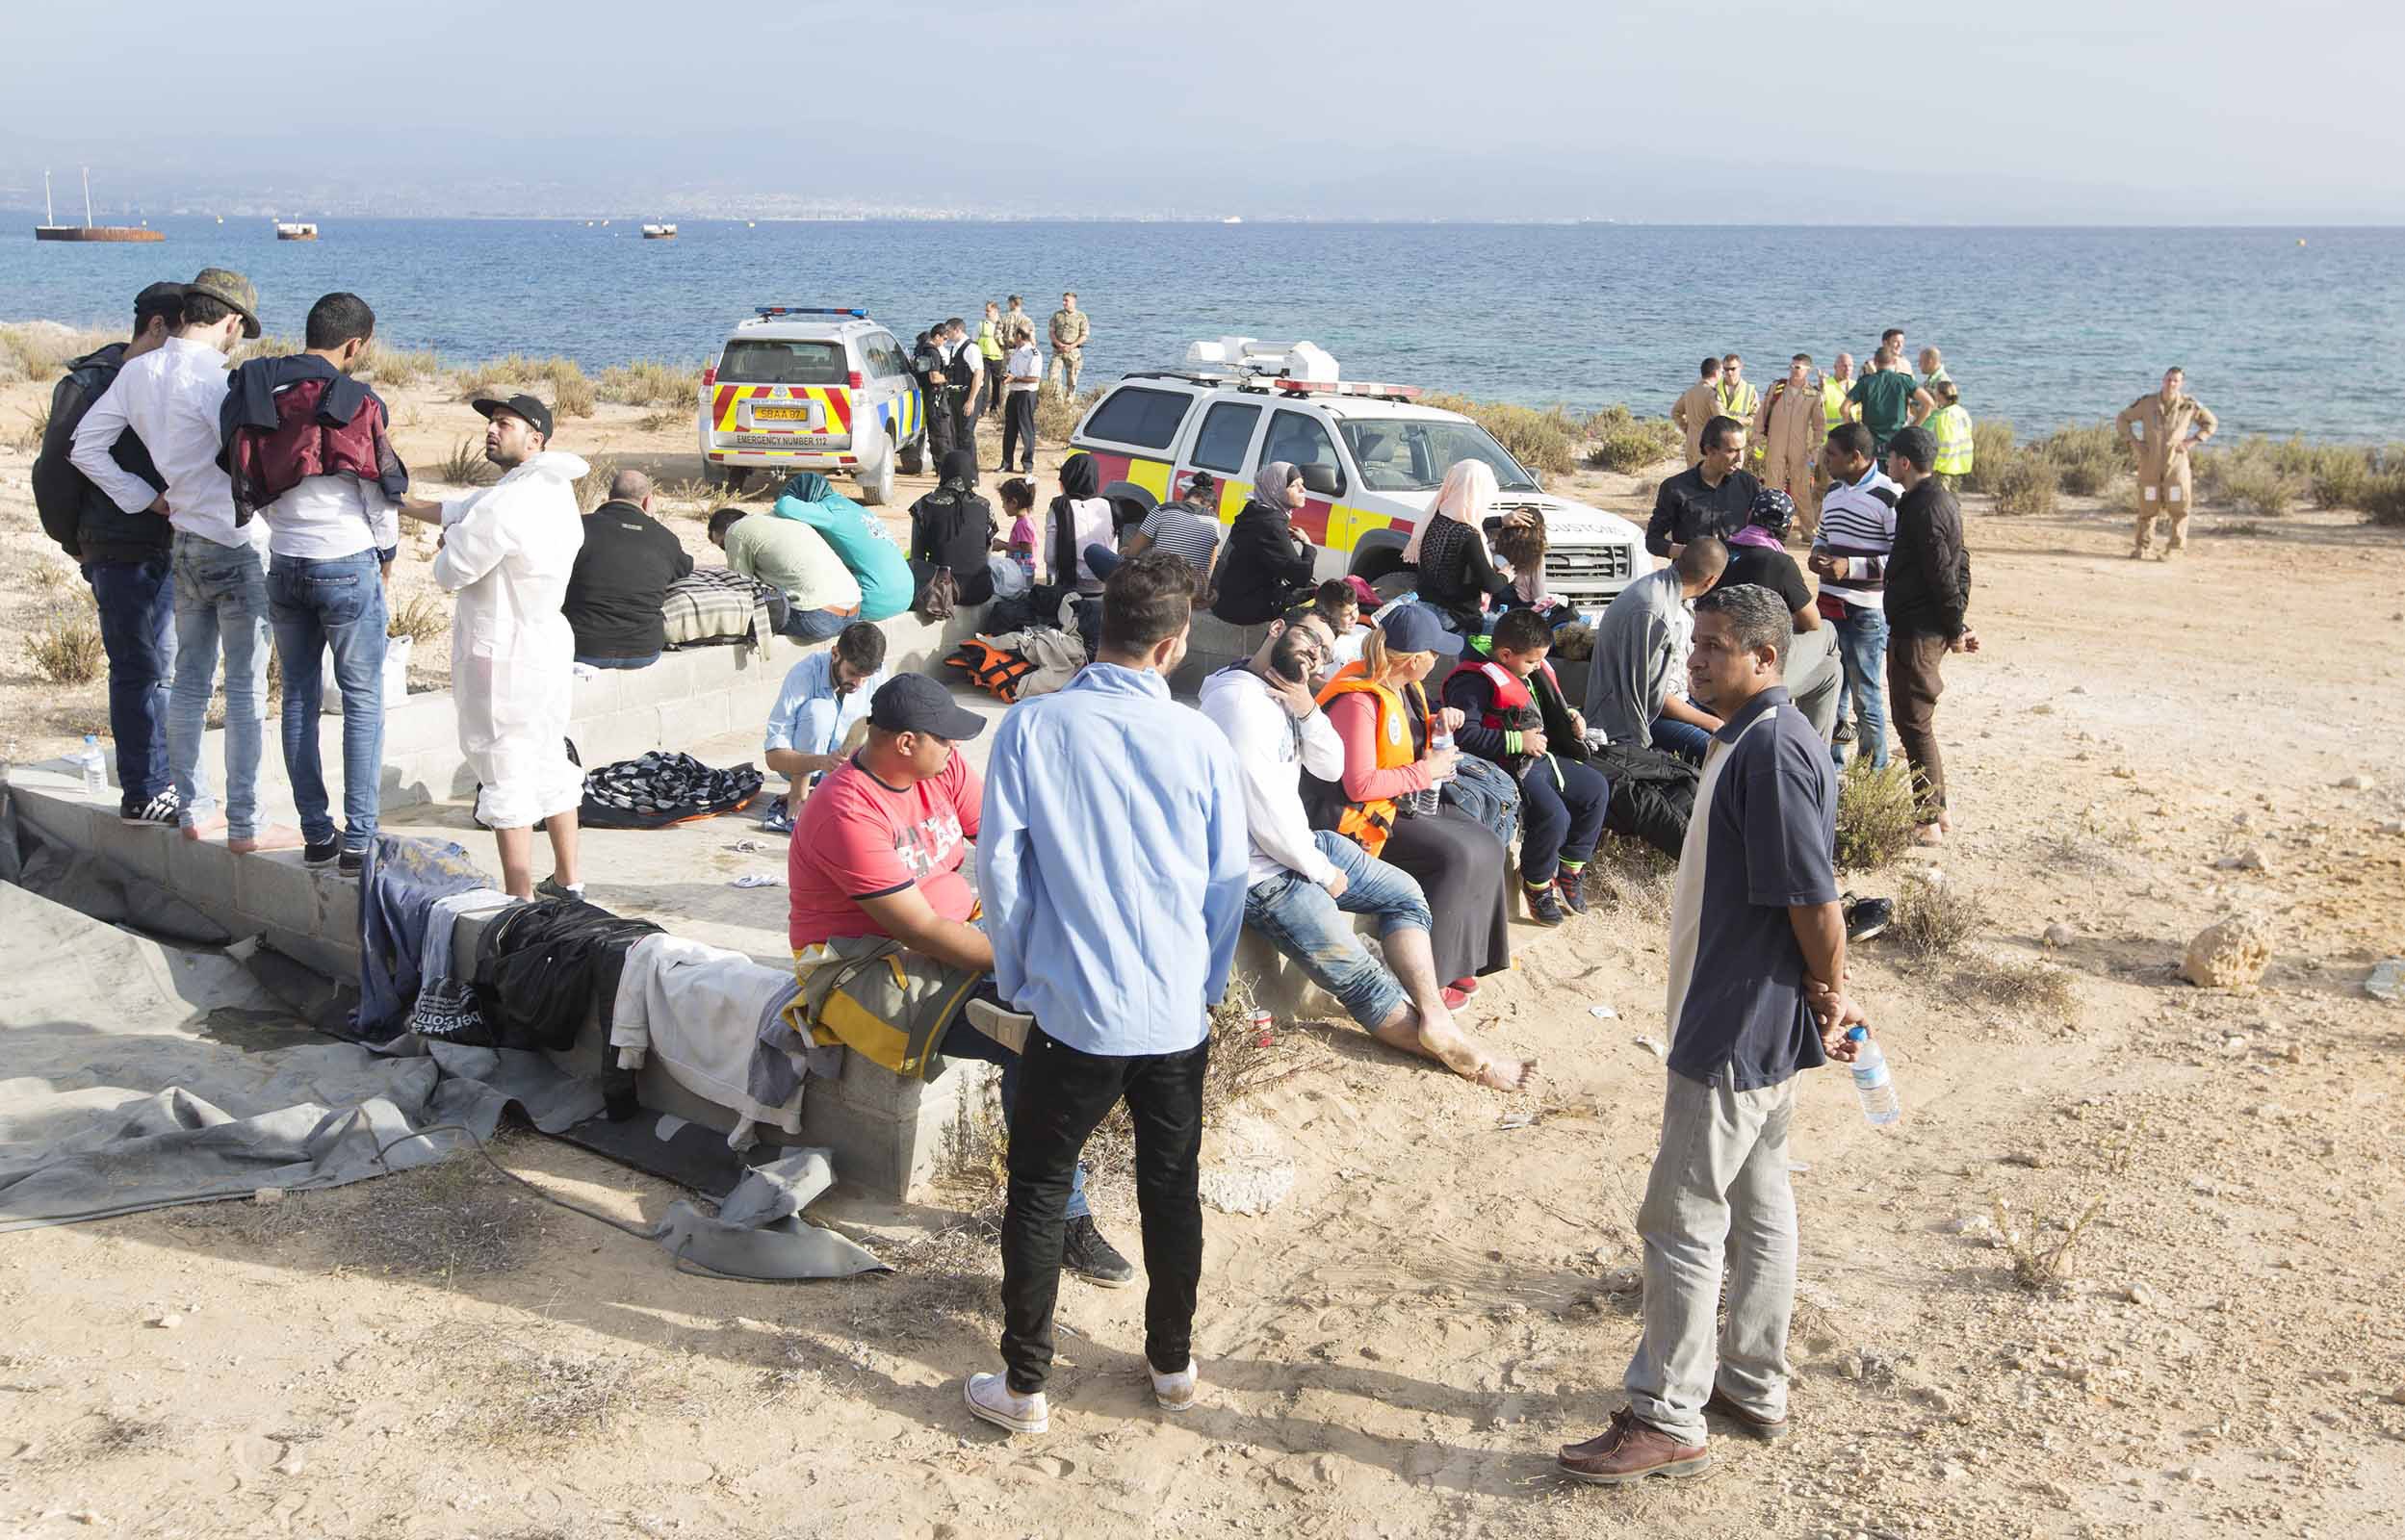 114 άτομα από τη Συρία με δυο βάρκες έφθασαν στο Ακρωτήρι (ΦΩΤΟΓΡΑΦΙΕΣ)